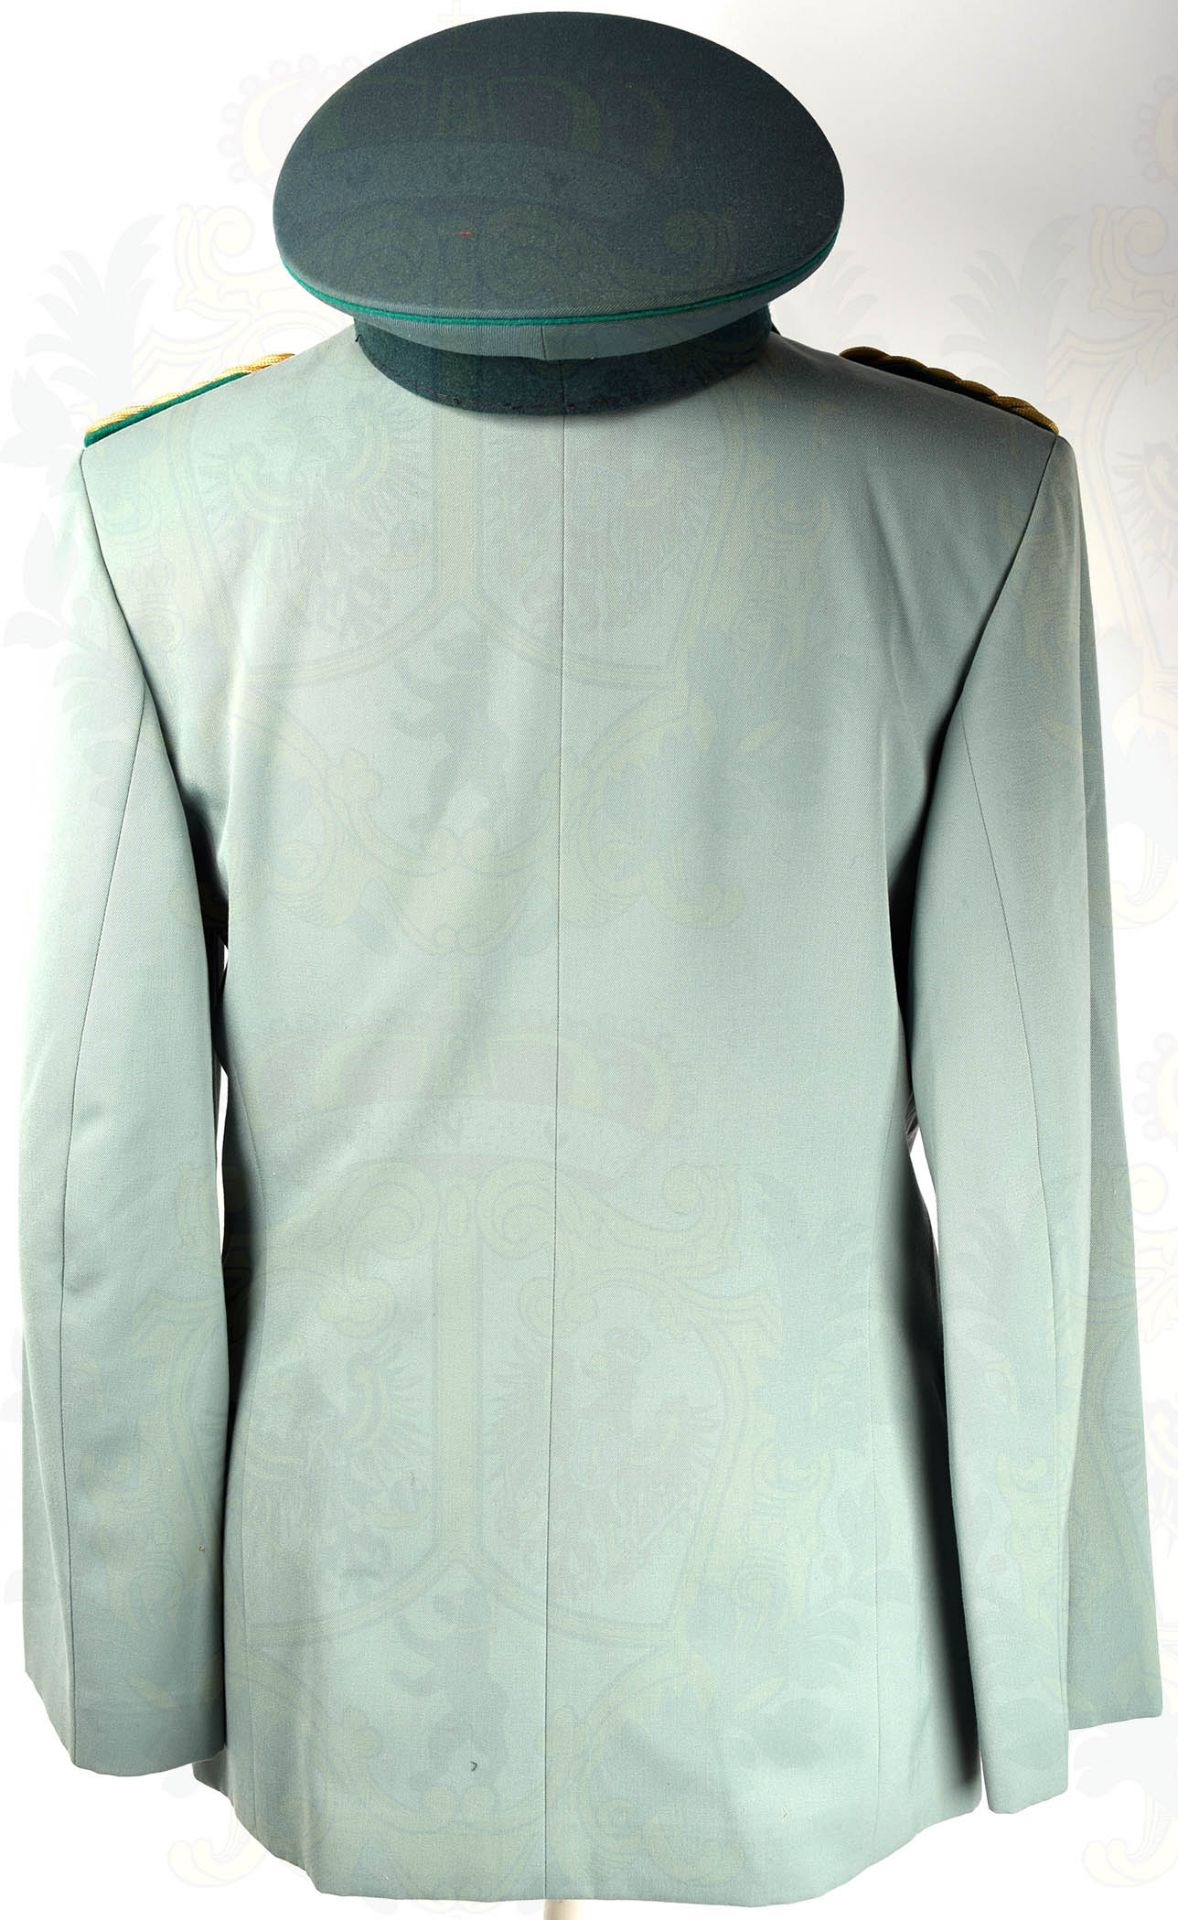 GESELLSCHAFTSUNIFORM GENERALMAJOR DER VP, Uniformrock aus graugrünen Tuch, mit 2 Taschen u. - Bild 7 aus 10